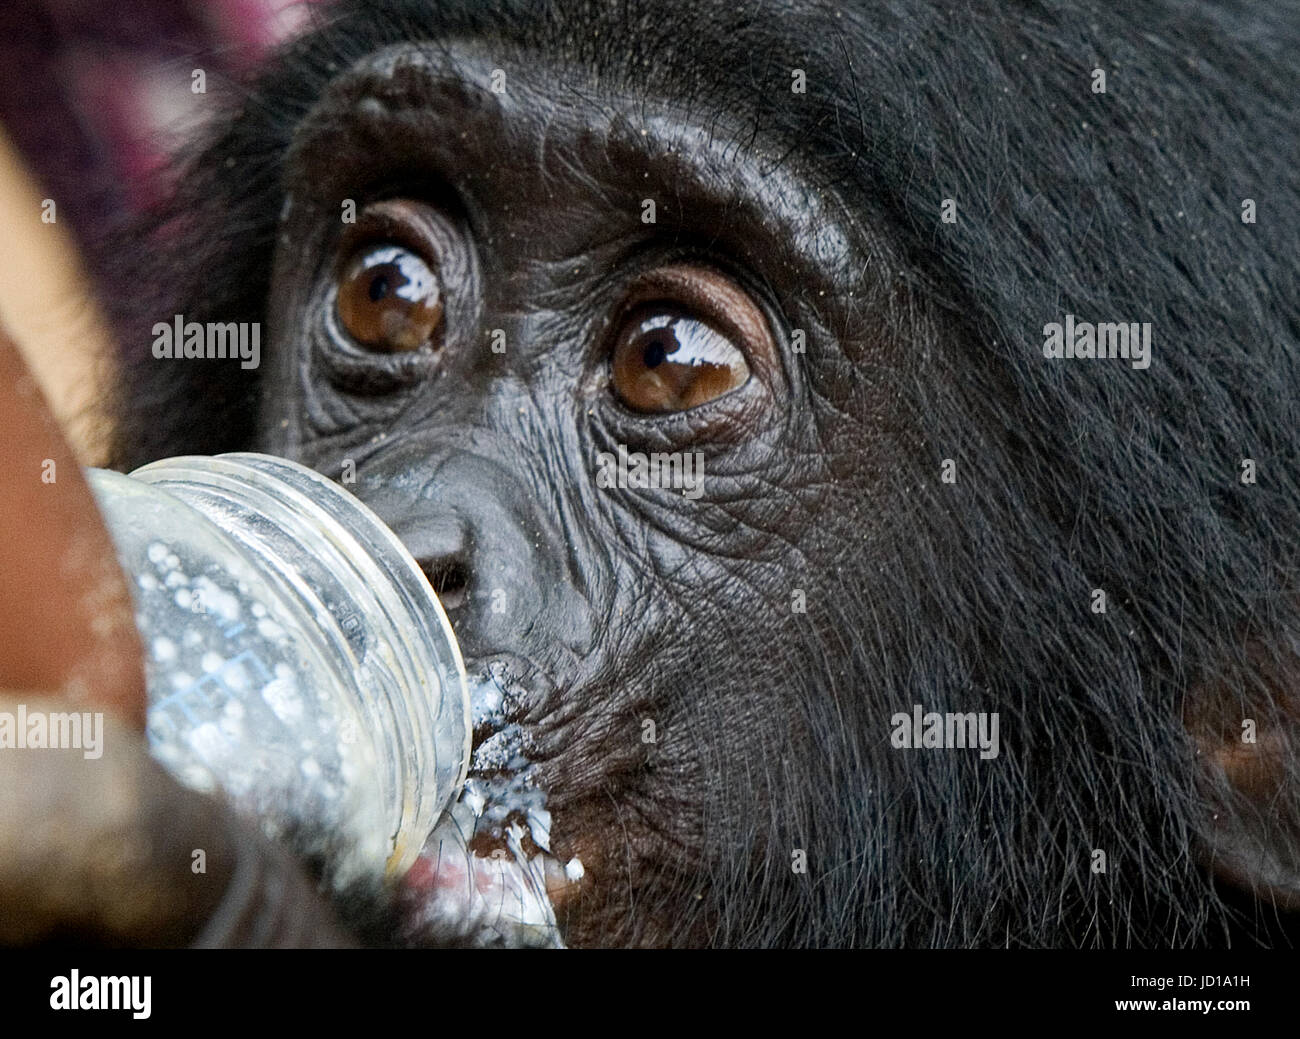 Ein Baby Bonobo trinkt Milch aus einer Flasche. Demokratische Republik Kongo. Lola Ya BONOBO Nationalpark. Stockfoto